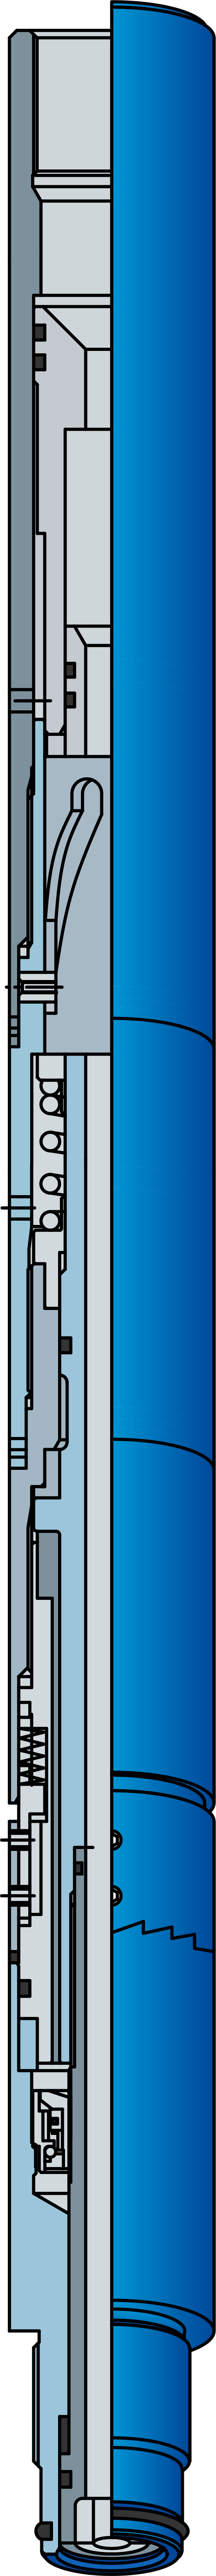 Устройство поворотное гидравлическое типа УПГ - 55